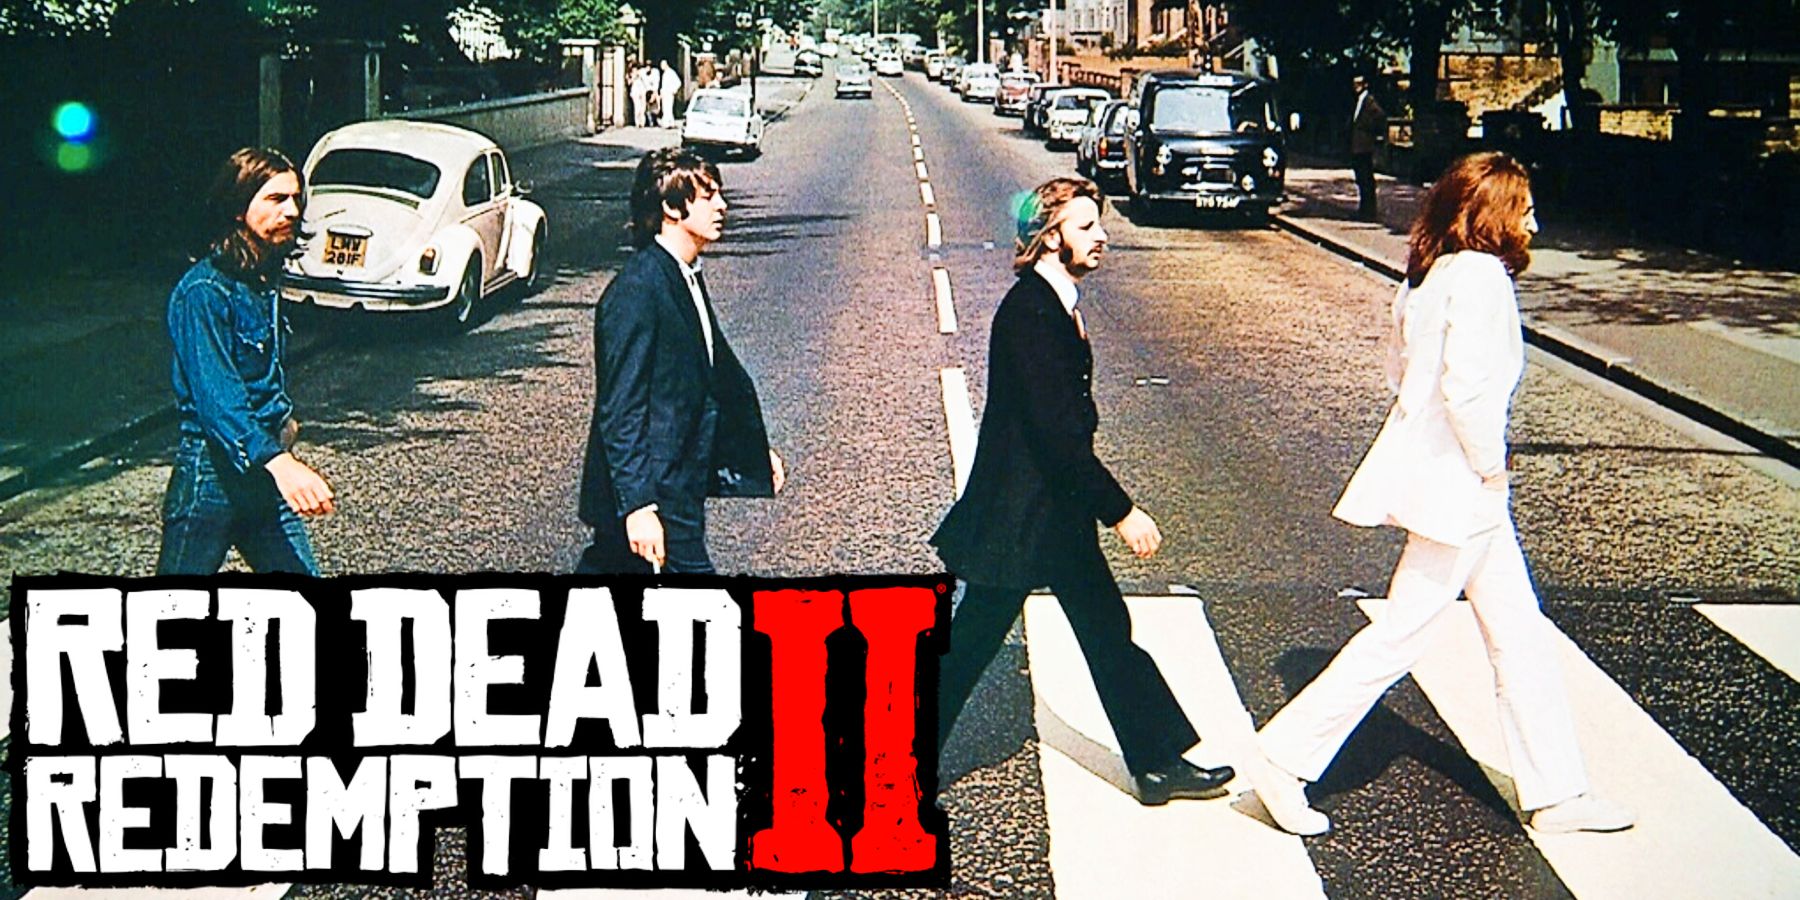 Fanúšikovi Red Dead Redemption 2 sa podarilo prerobiť ikonický obal albumu Beatles v hre